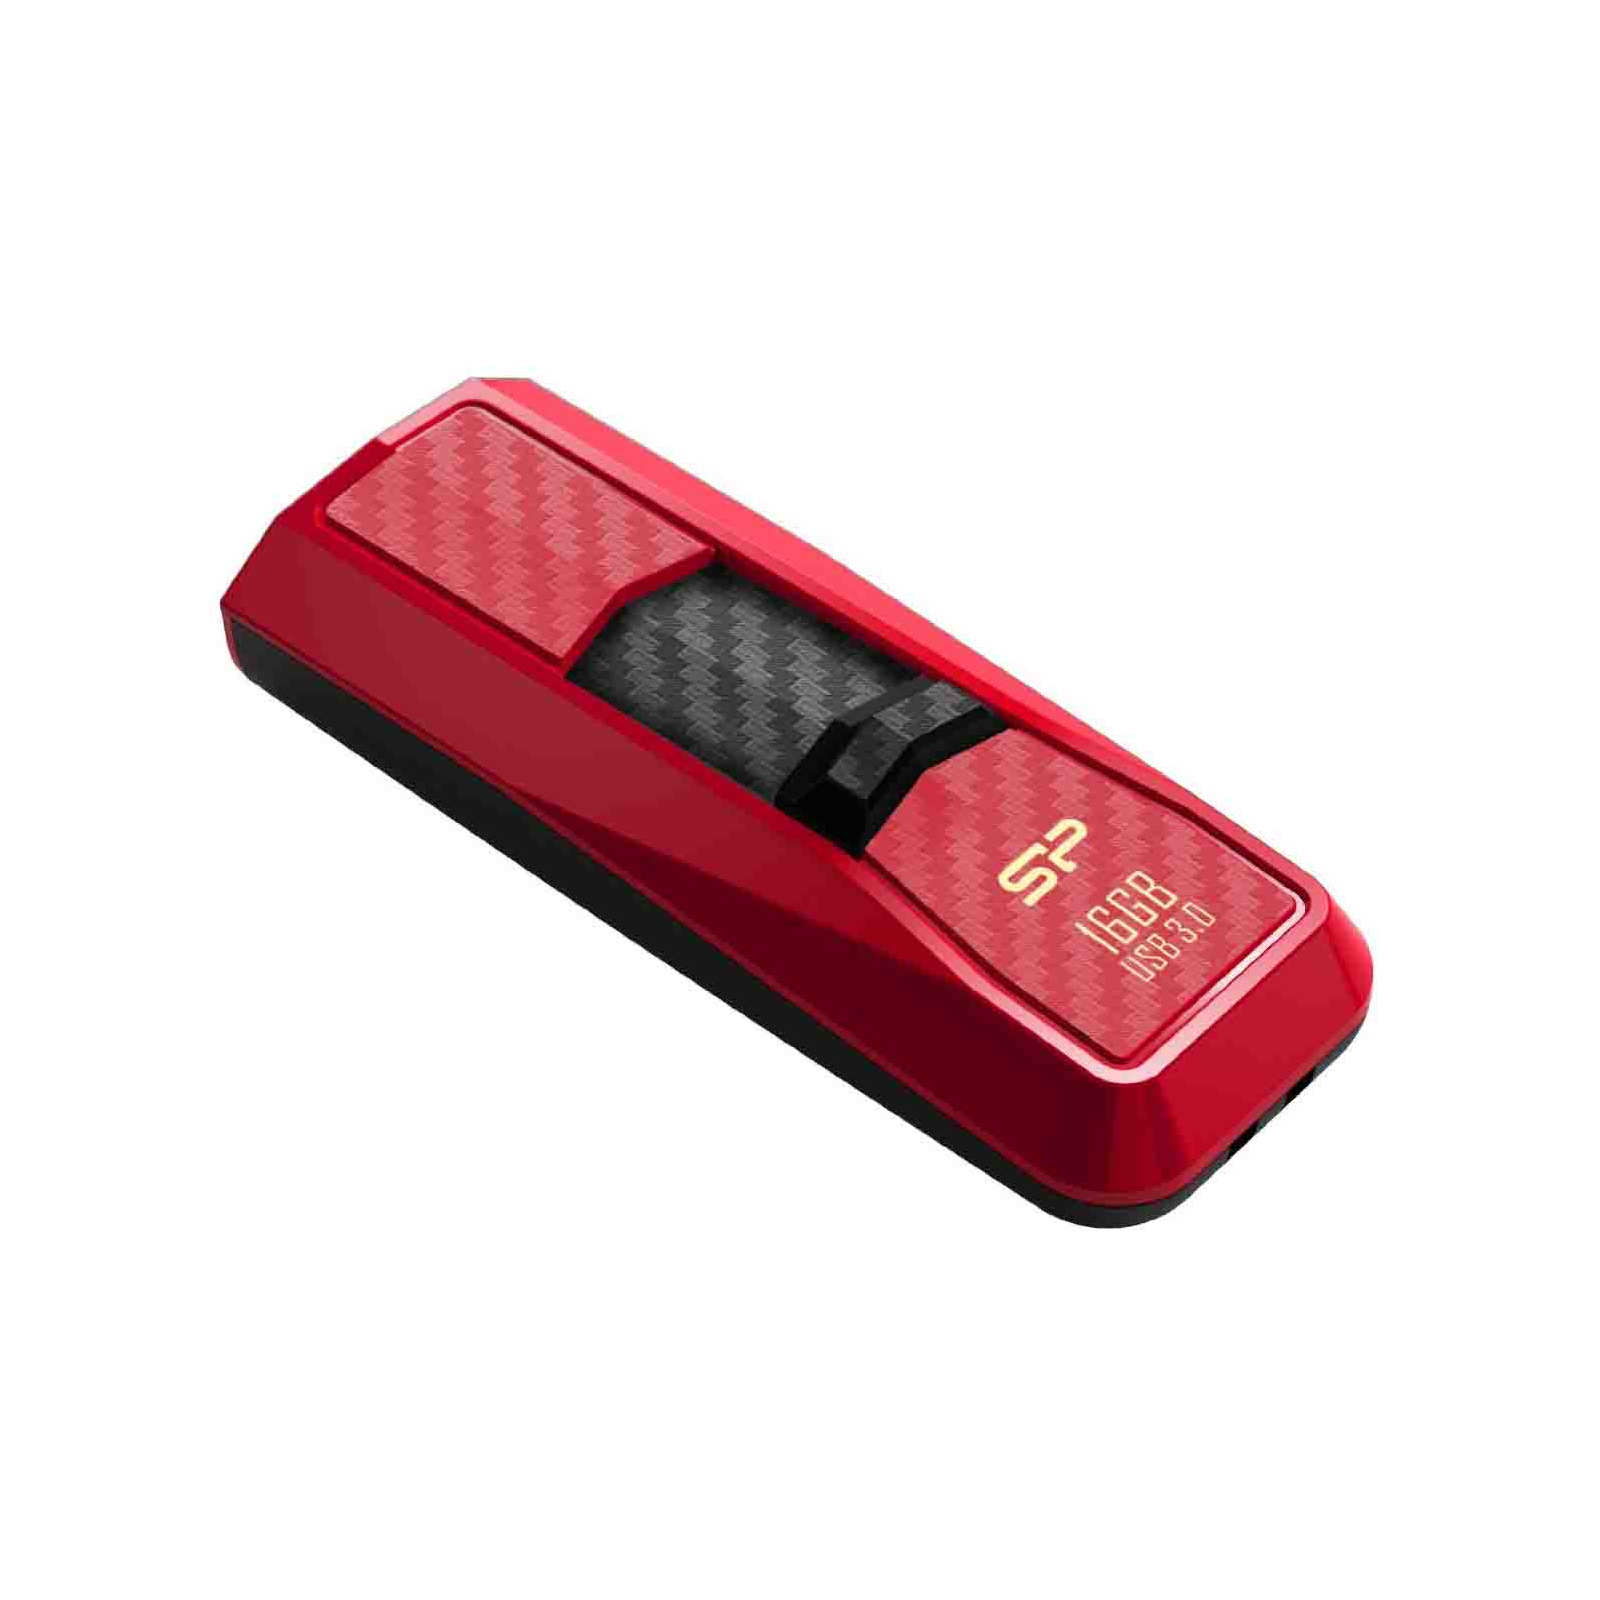 USB флеш накопитель Silicon Power 16Gb Blaze B50 Red USB 3.0 (SP016GBUF3B50V1R) изображение 3